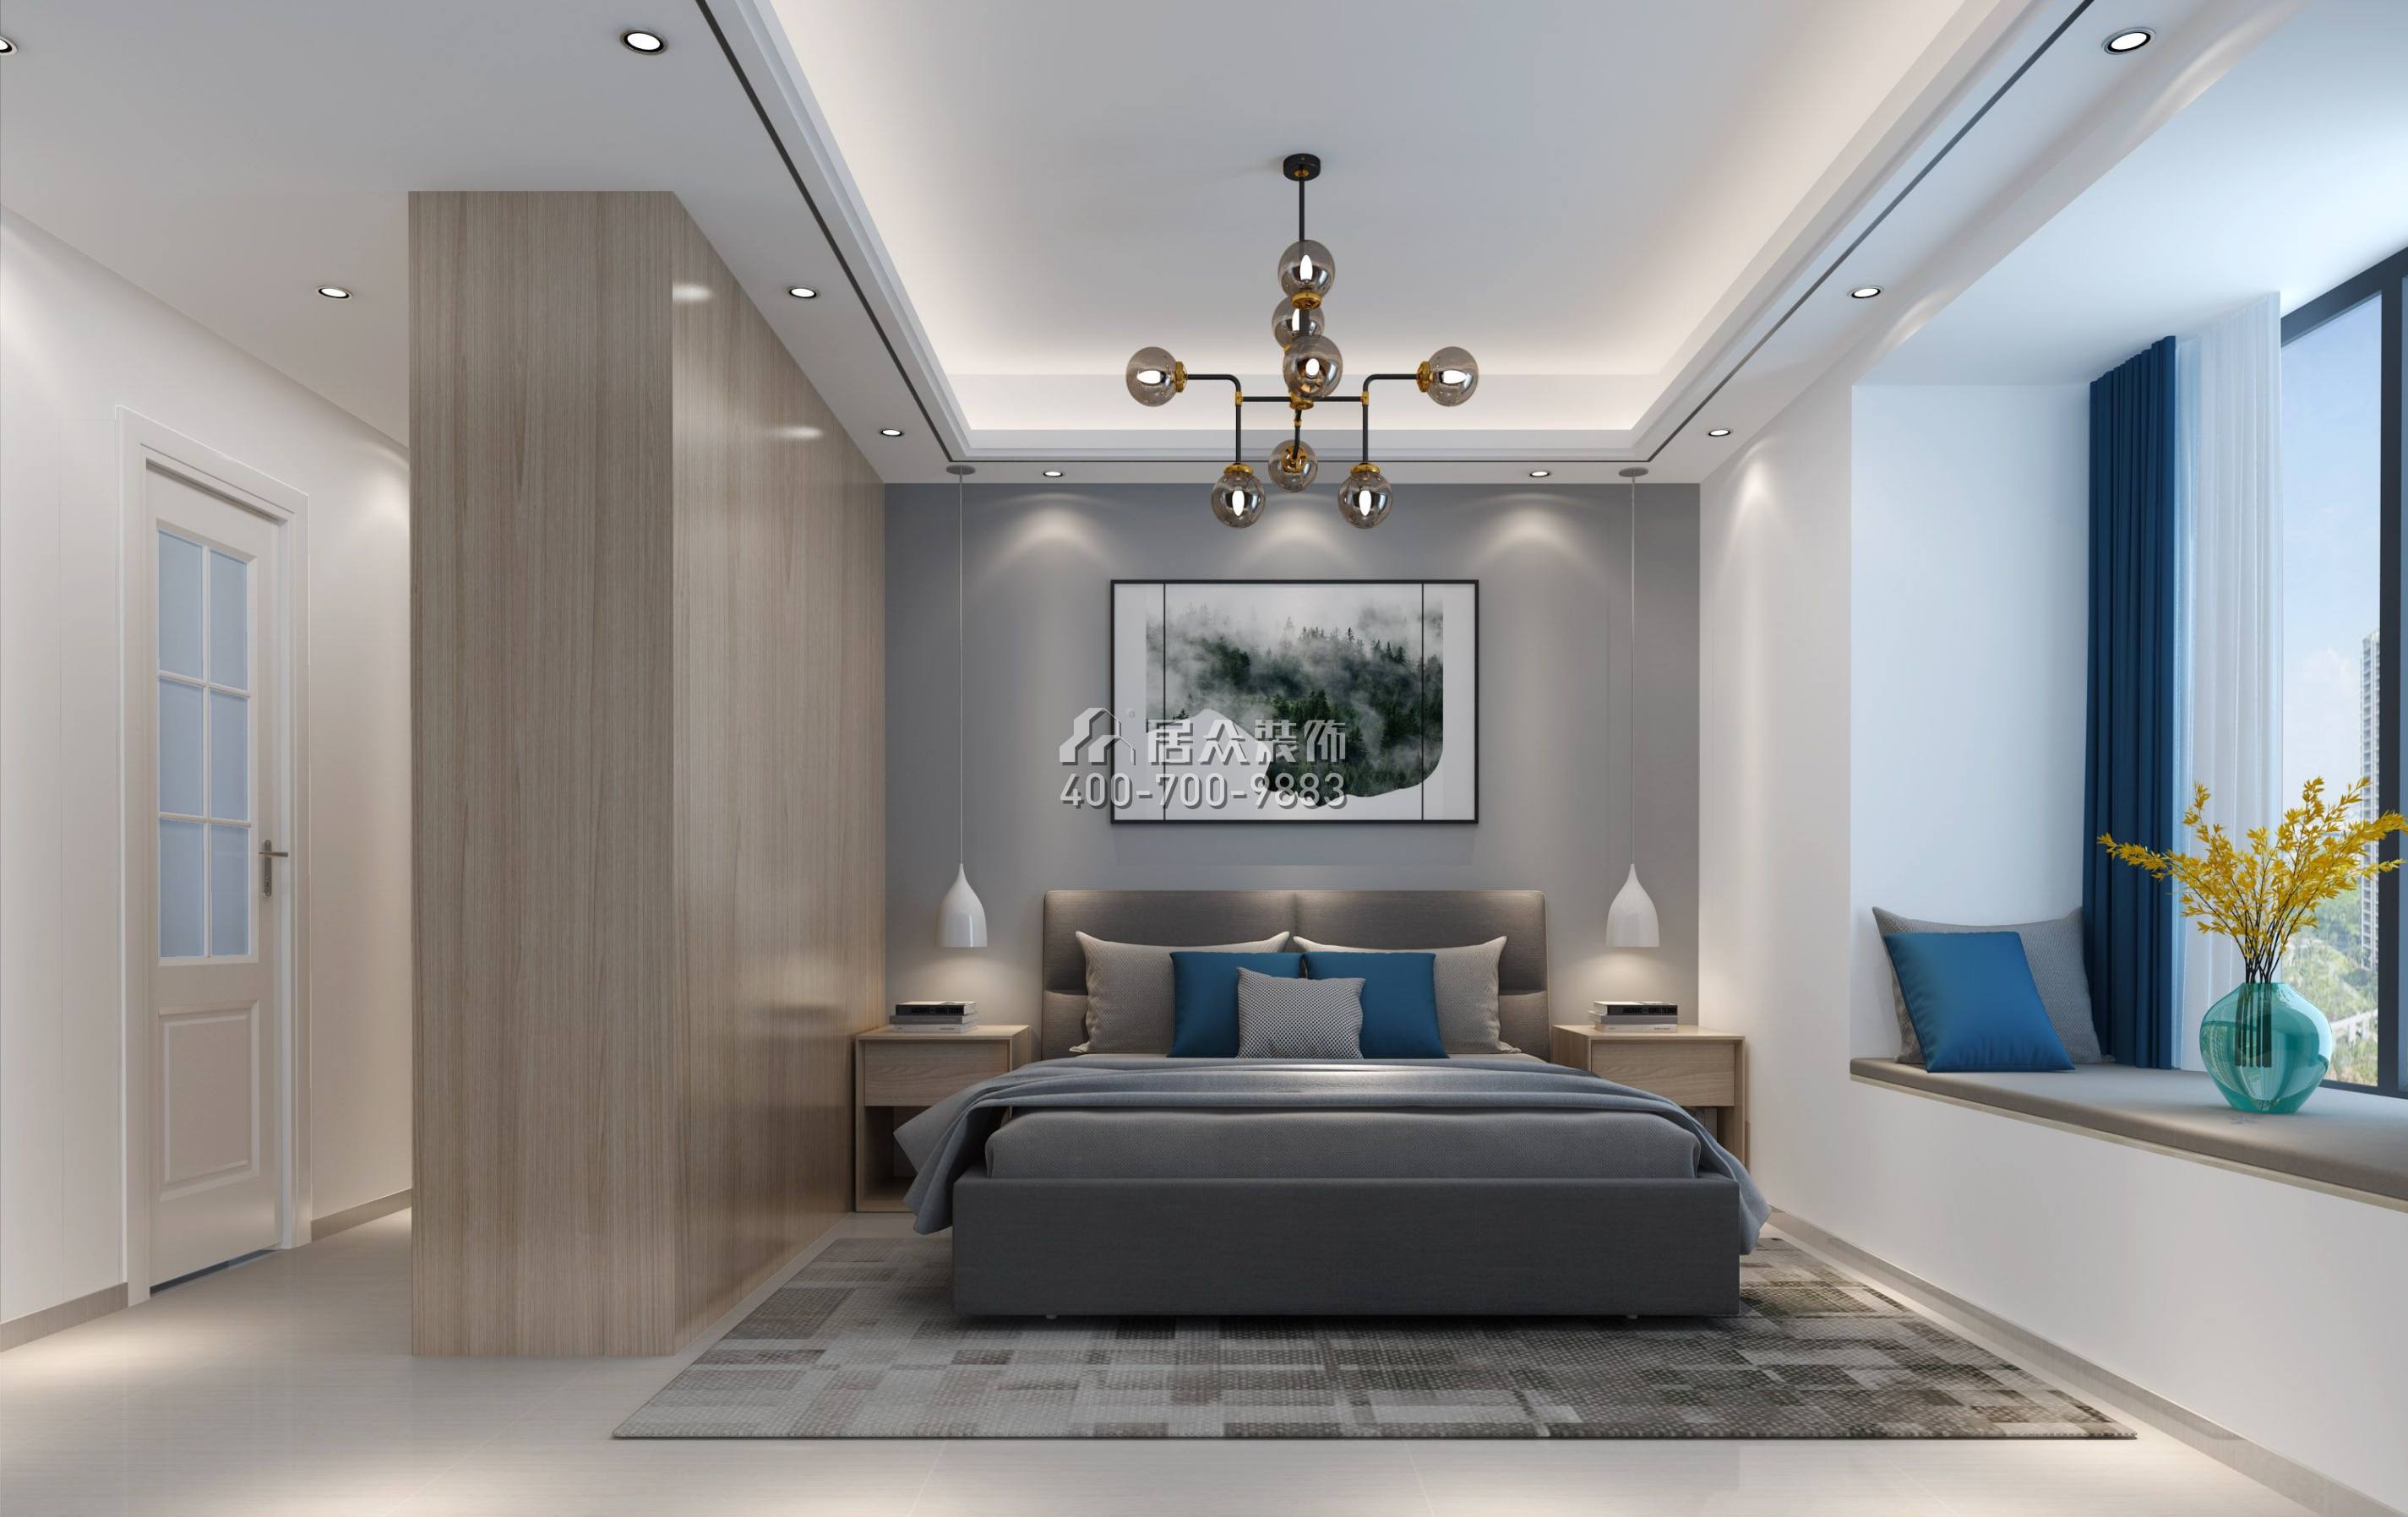 润科华府129平方米现代简约风格平层户型卧室装修效果图